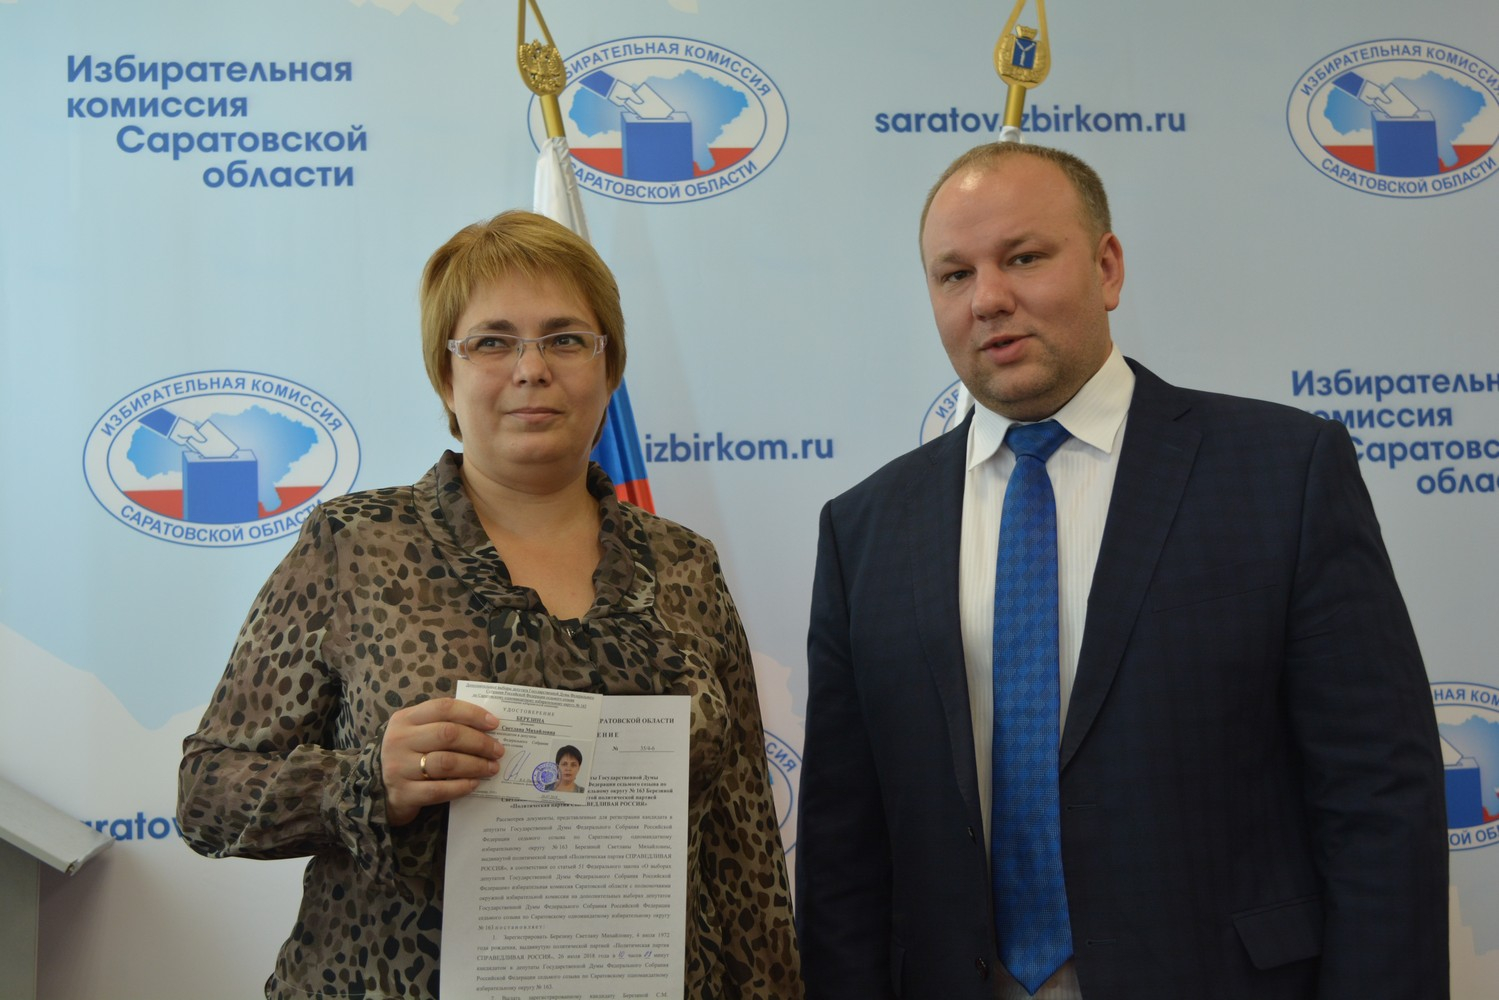 Сайт избирательной комиссии саратовской области. Избирательная комиссия Саратовской области.